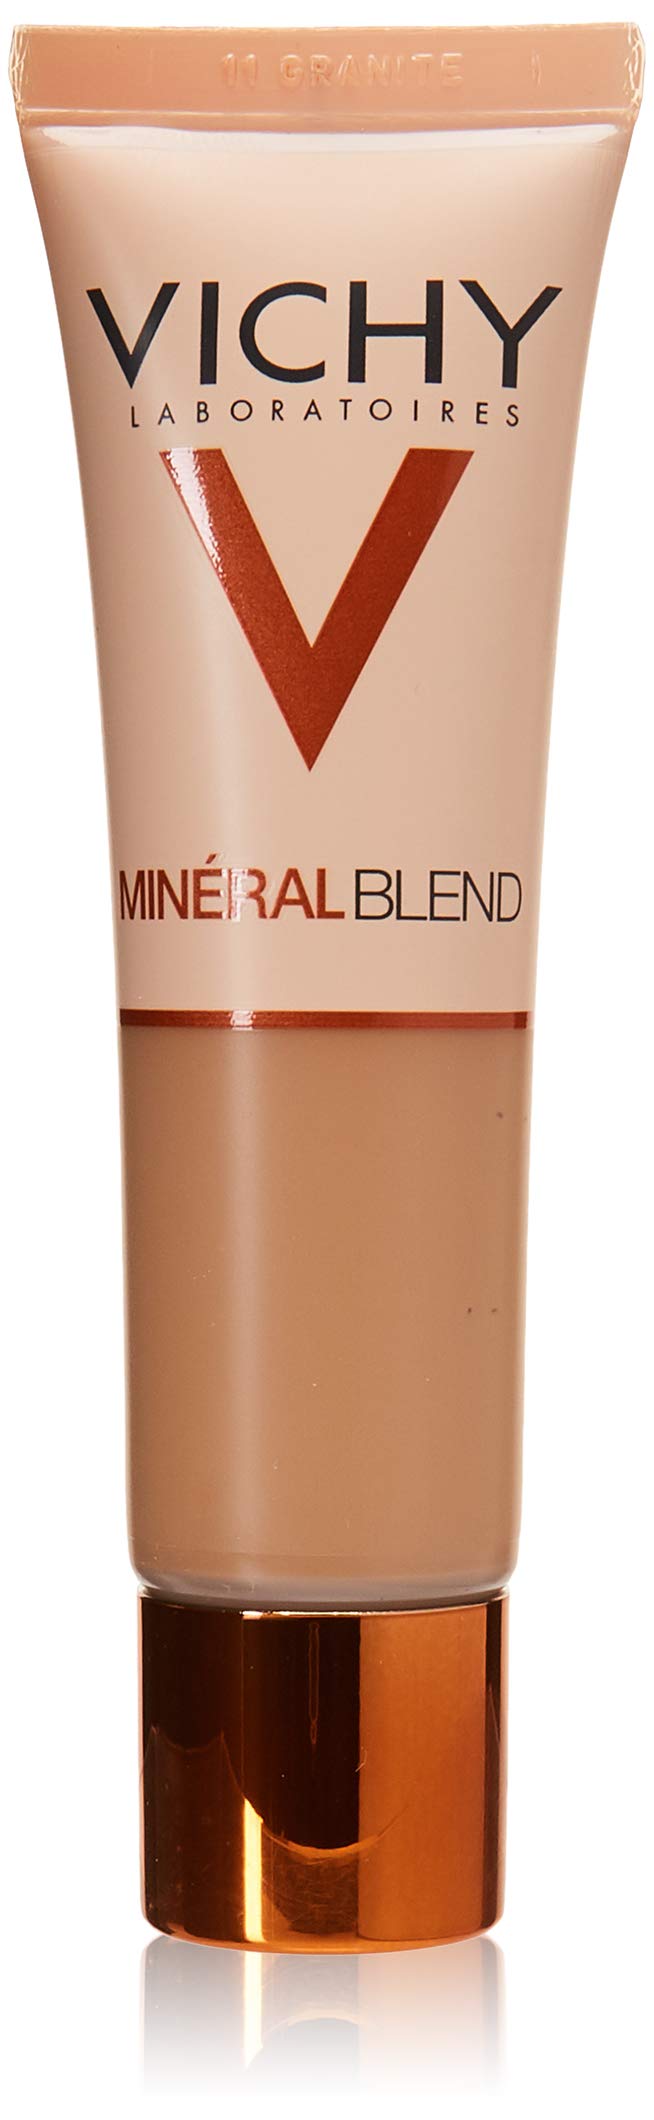 [Australia] - VICHY Mineral Blend Makeup 09 Agate 30 ml 